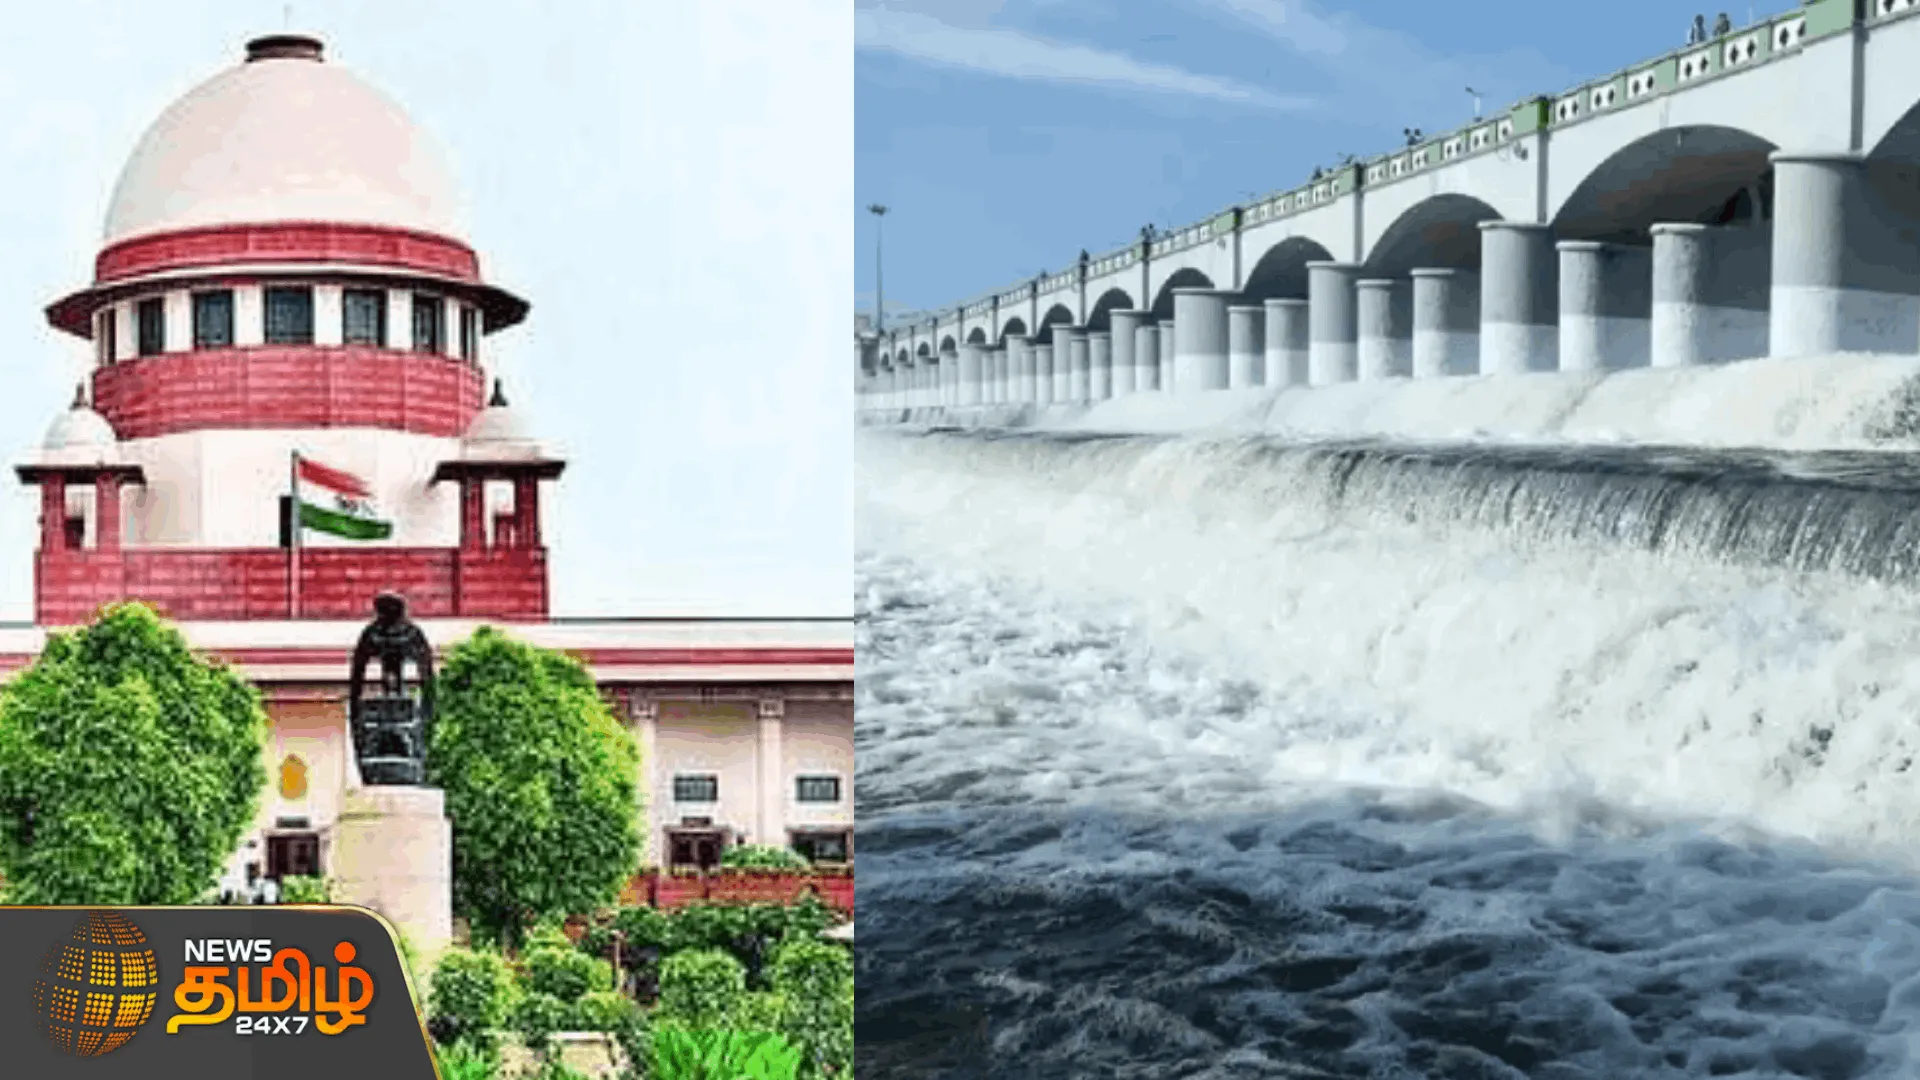 தமிழ்நாட்டிற்கு காவிரி நீரை திறந்துவிட எதிர்ப்பு  உச்சநீதிமன்றத்தில் கர்நாடகா அவசர மனுதாக்கல்| Cauvery water to Tamil Nadu